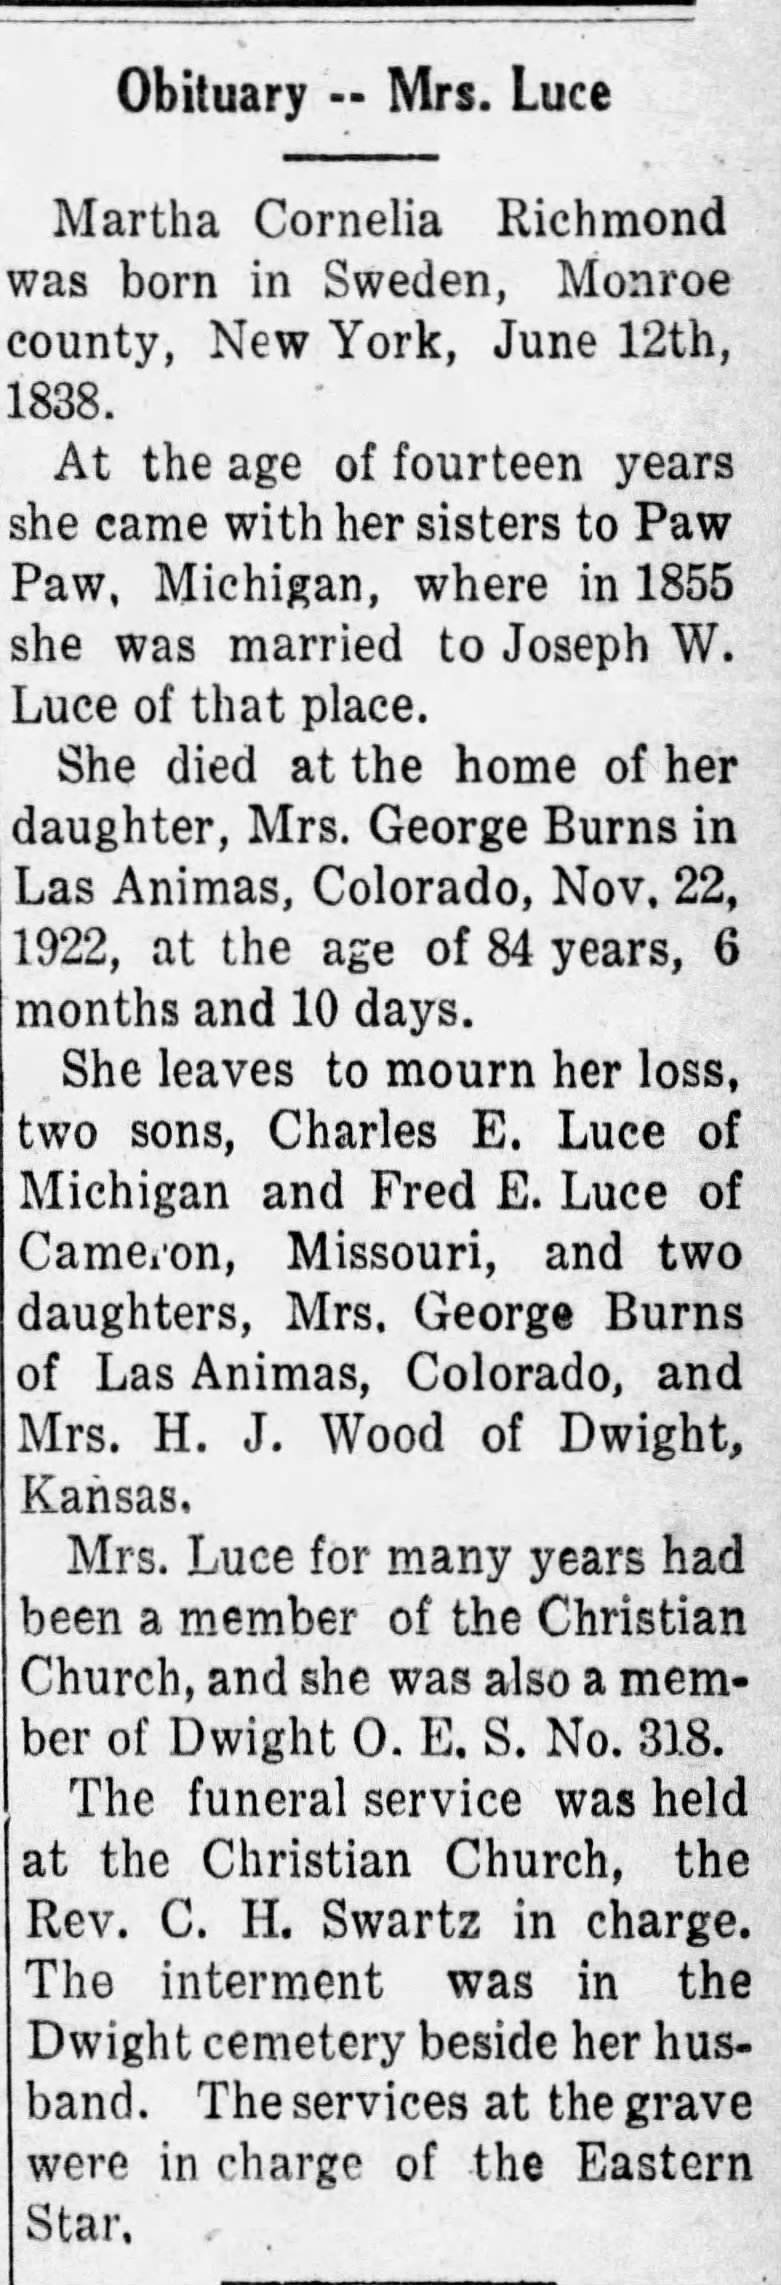 Obituary for Luce Martha Cornelia Richmond